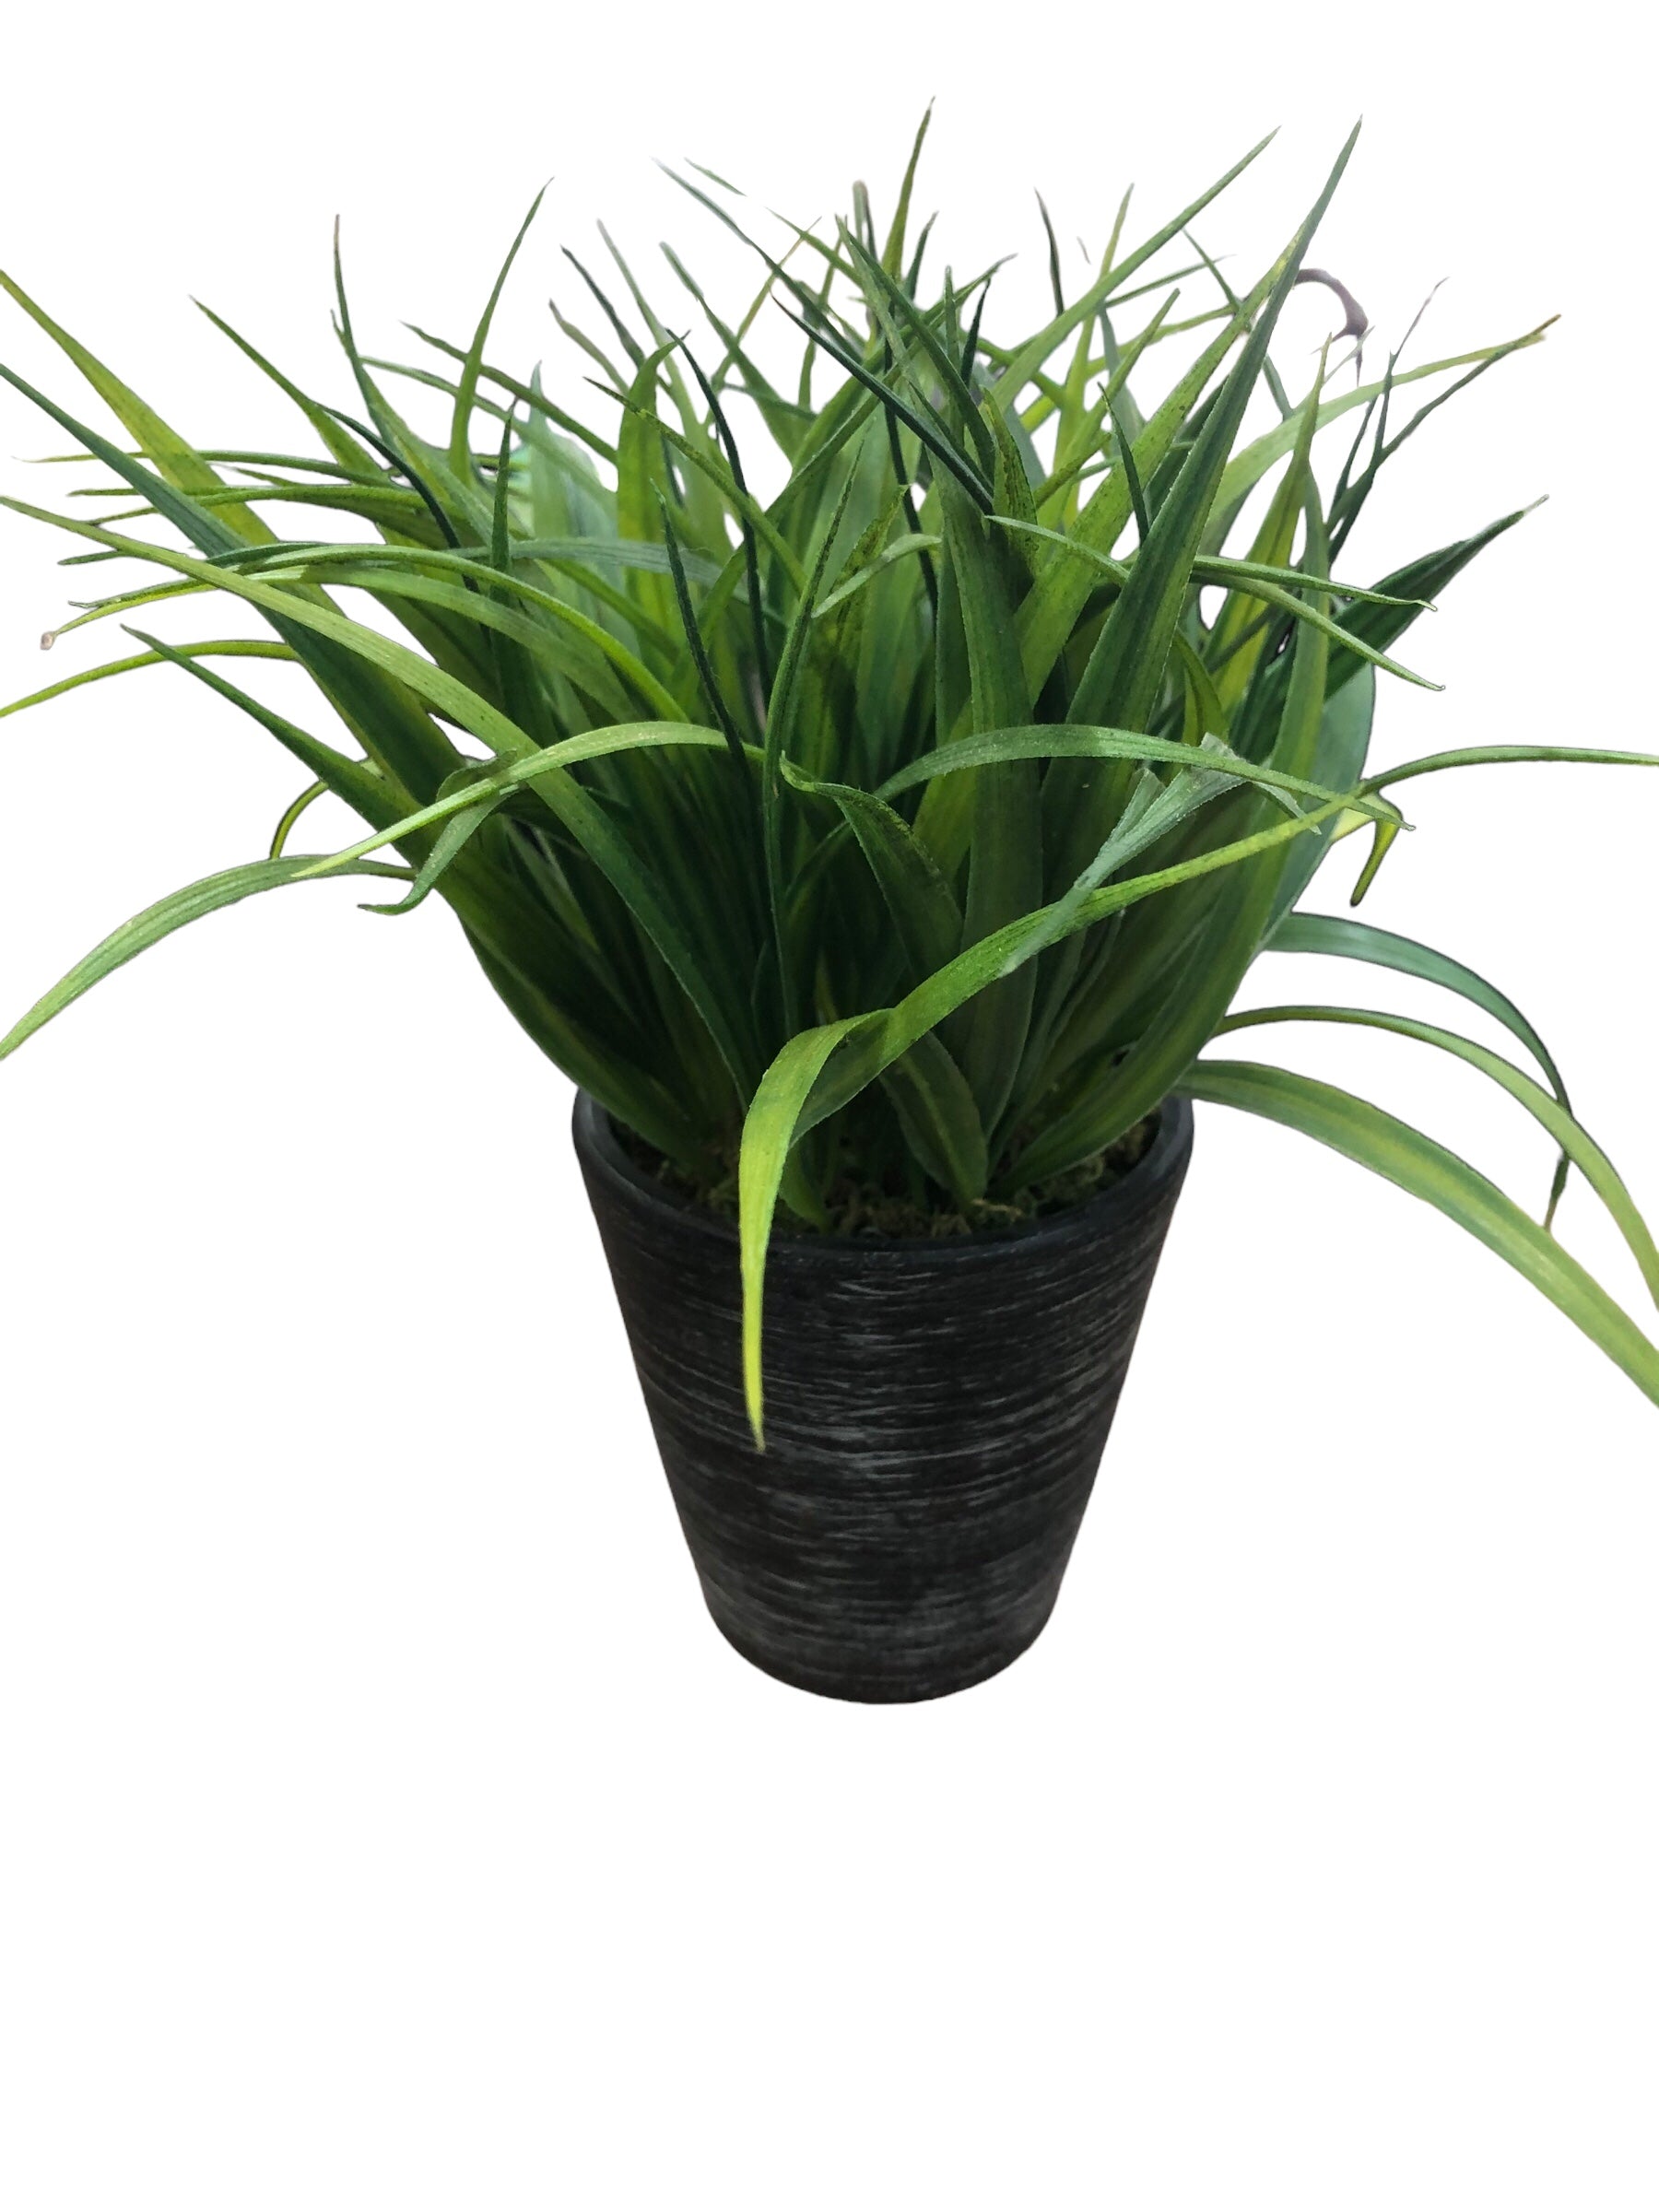 Grass in Ceramic blk/grey Vase